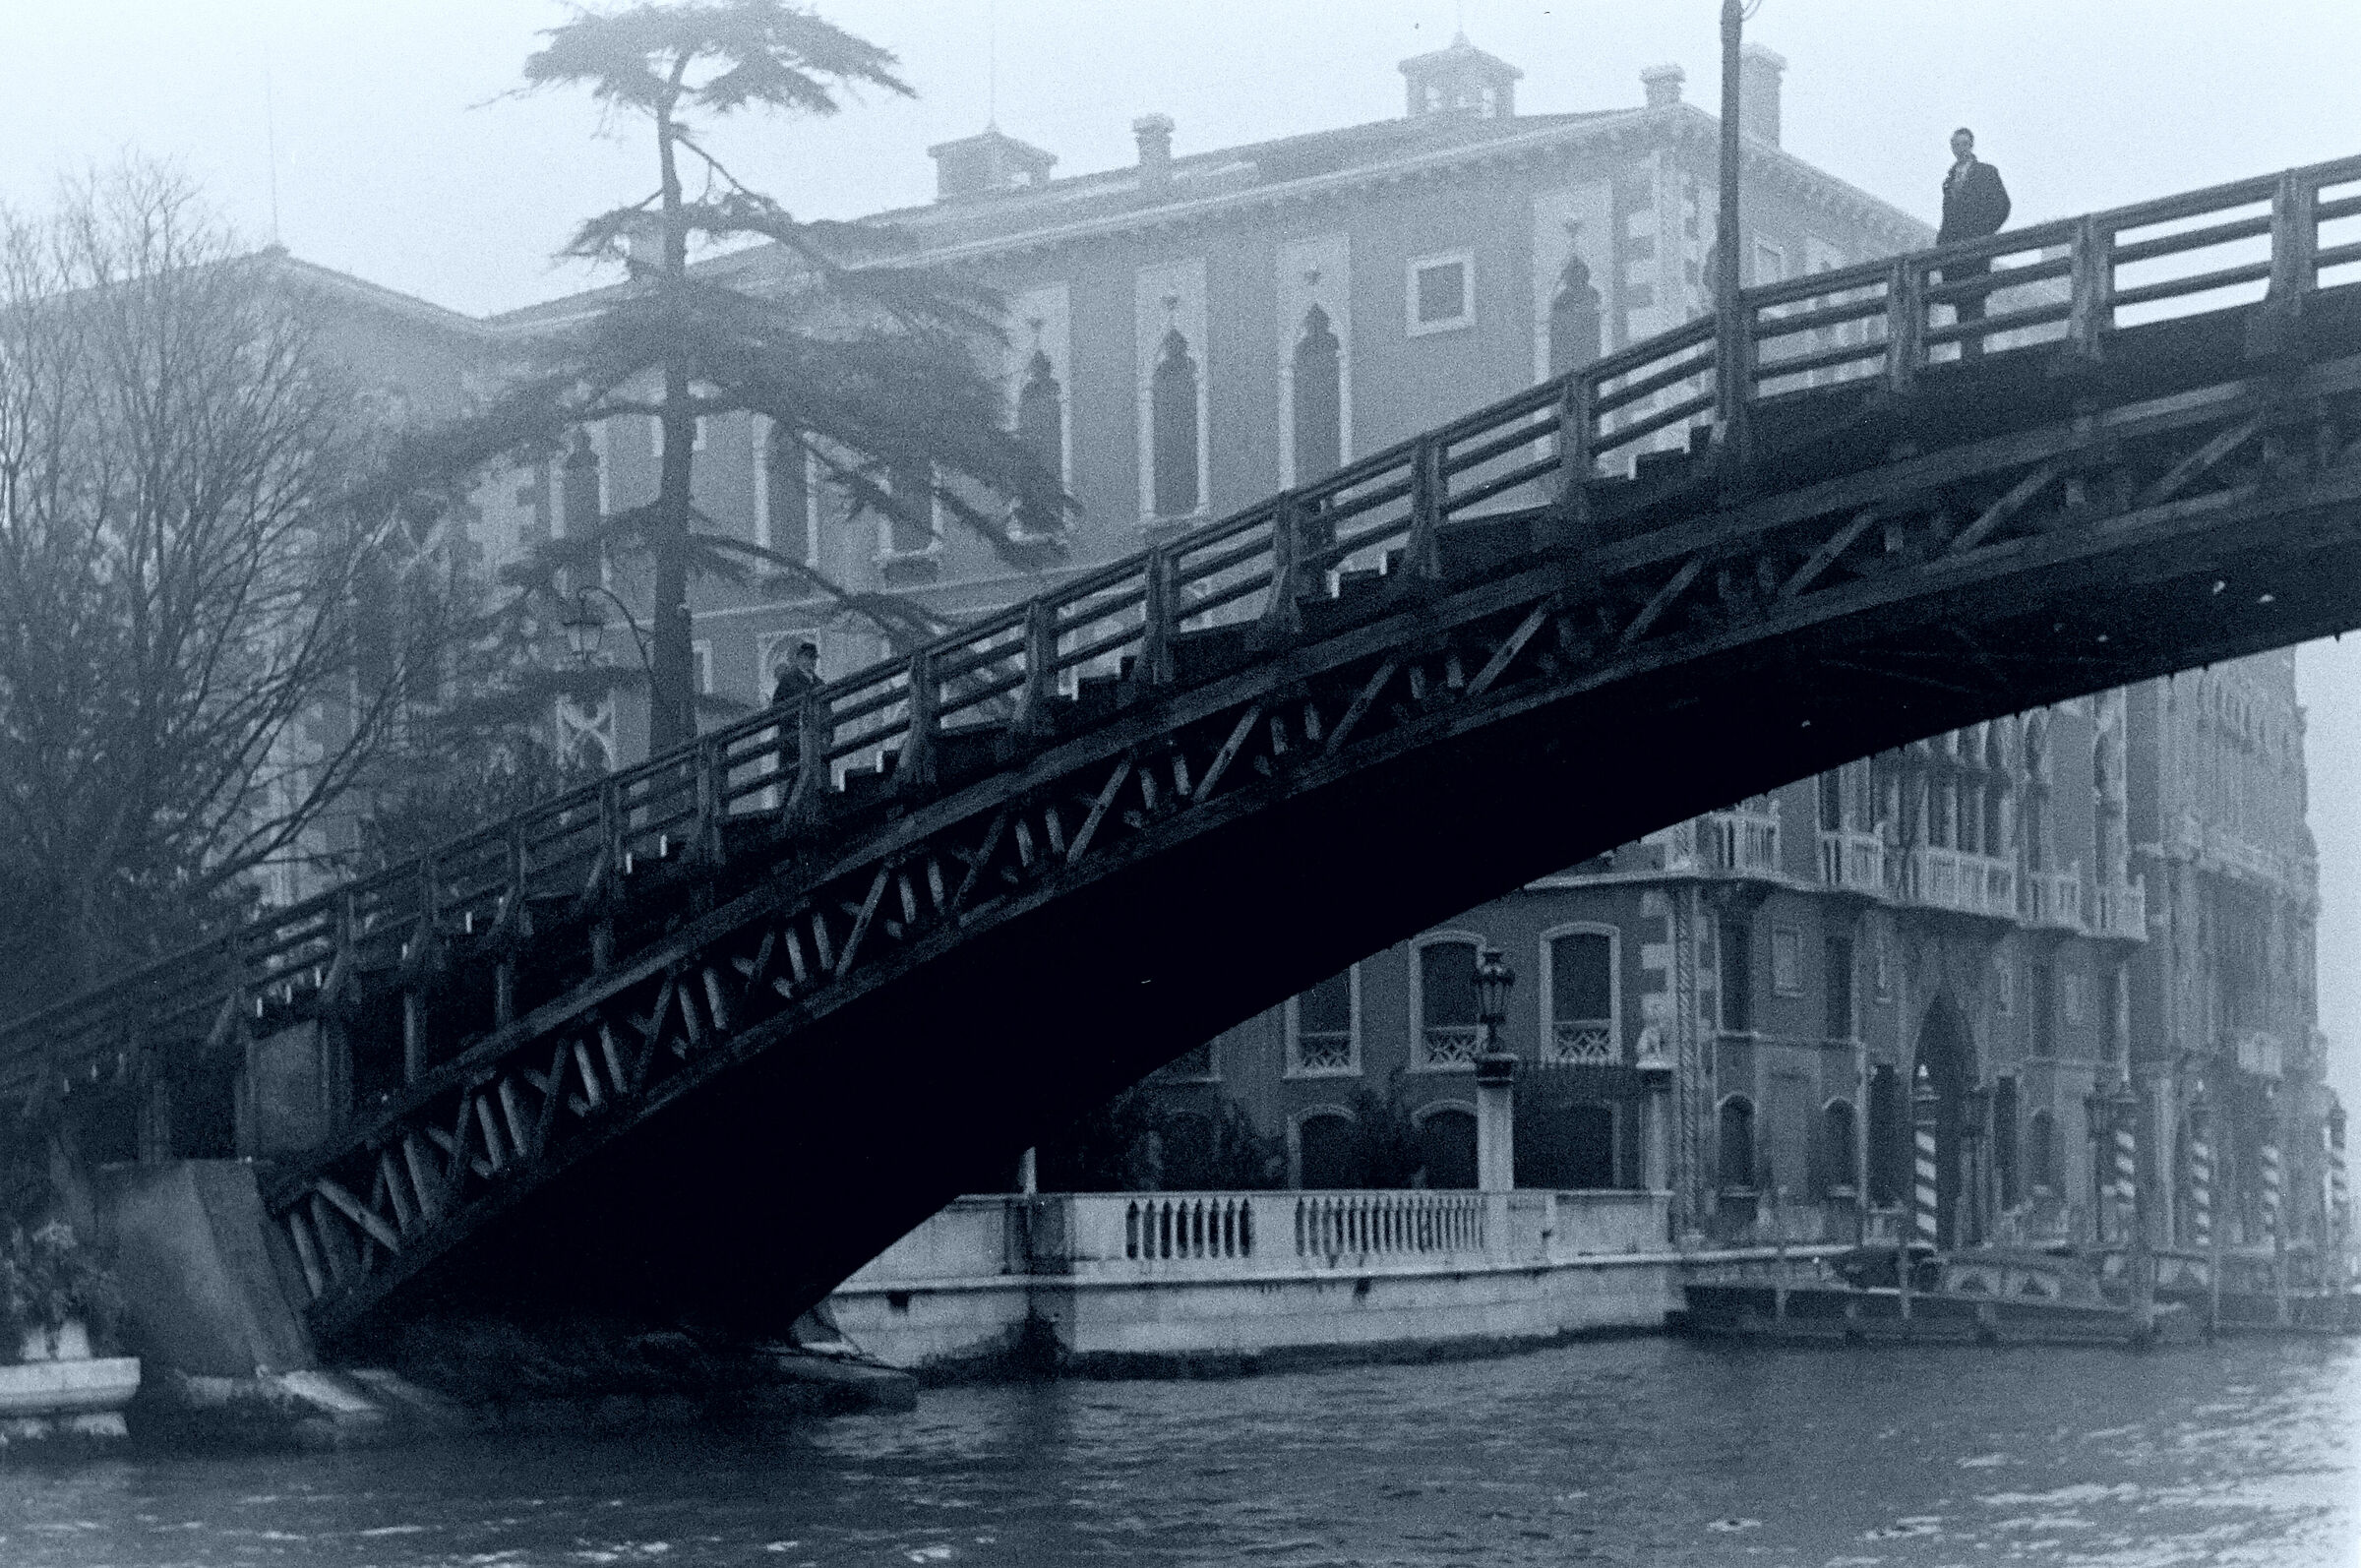 venezia 1970...